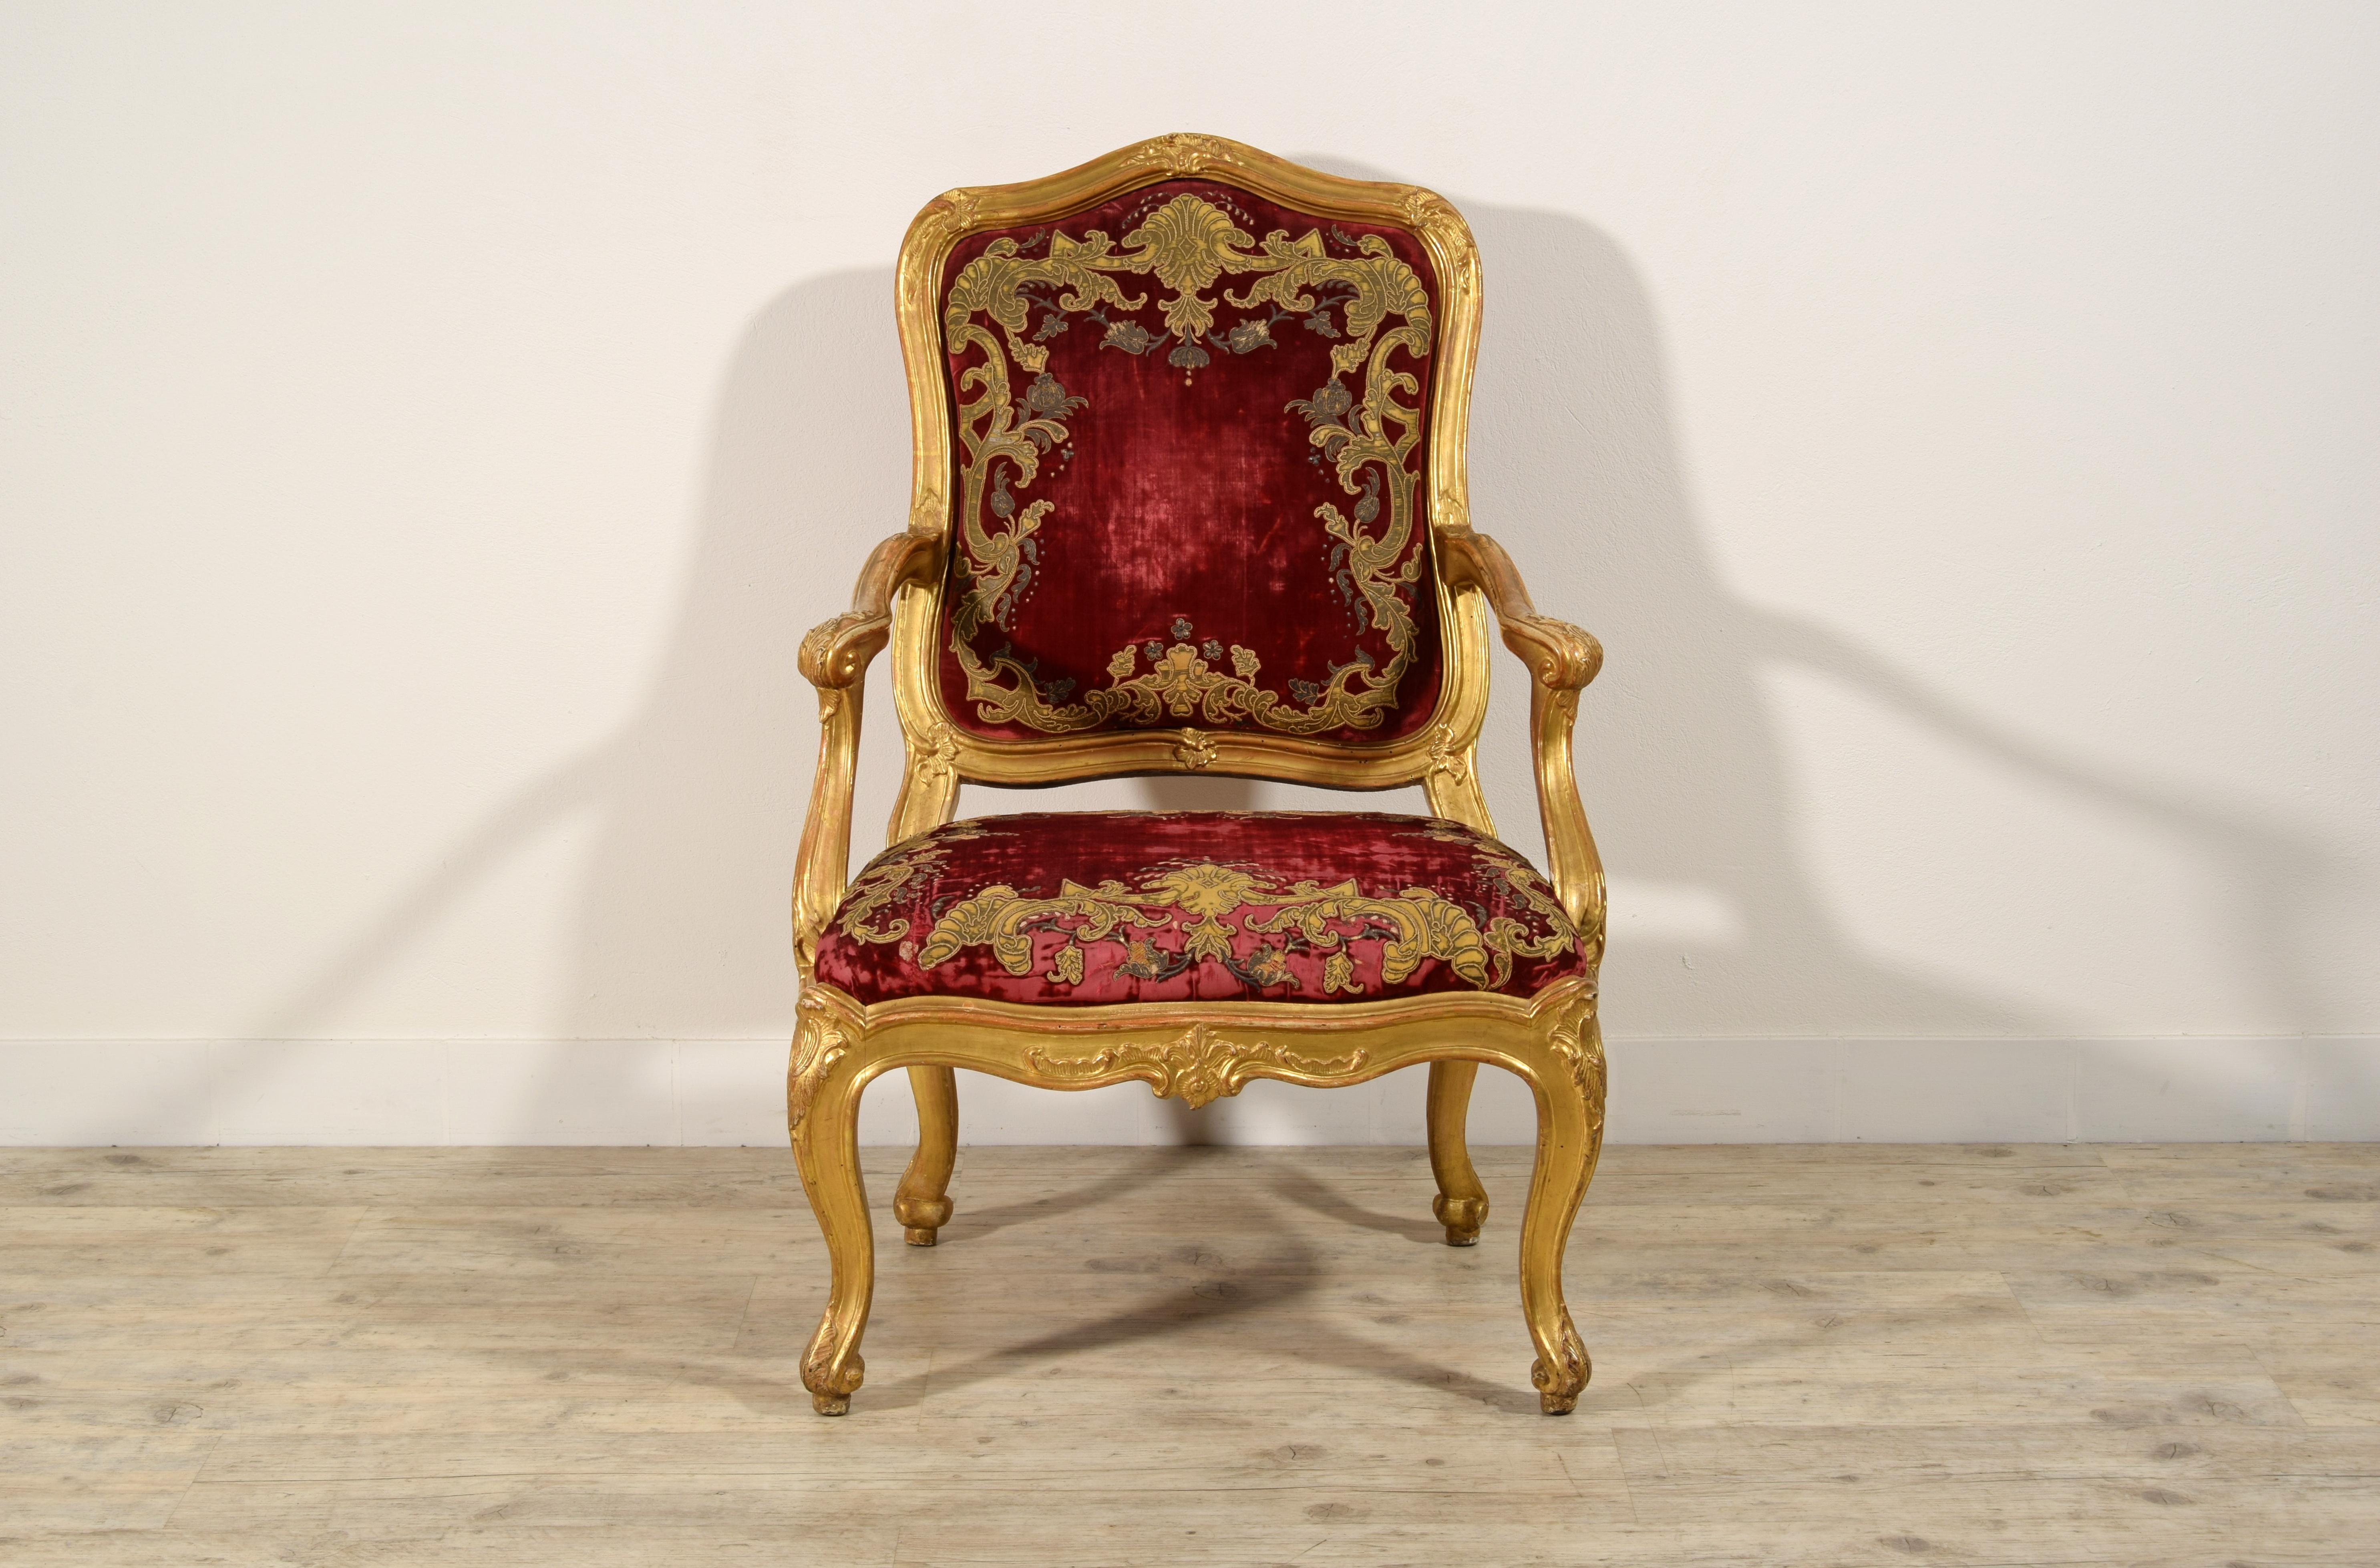 18ème siècle, Fauteuil italien Louis XV en bois doré sculpté
Dimensions : cm H 108 x L 73 x P 77, siège H 46 x P 51 x L 61
Le splendide grand fauteuil, en bois finement sculpté et doré, a été fabriqué à Gênes, à l'époque Louis XV, au milieu du